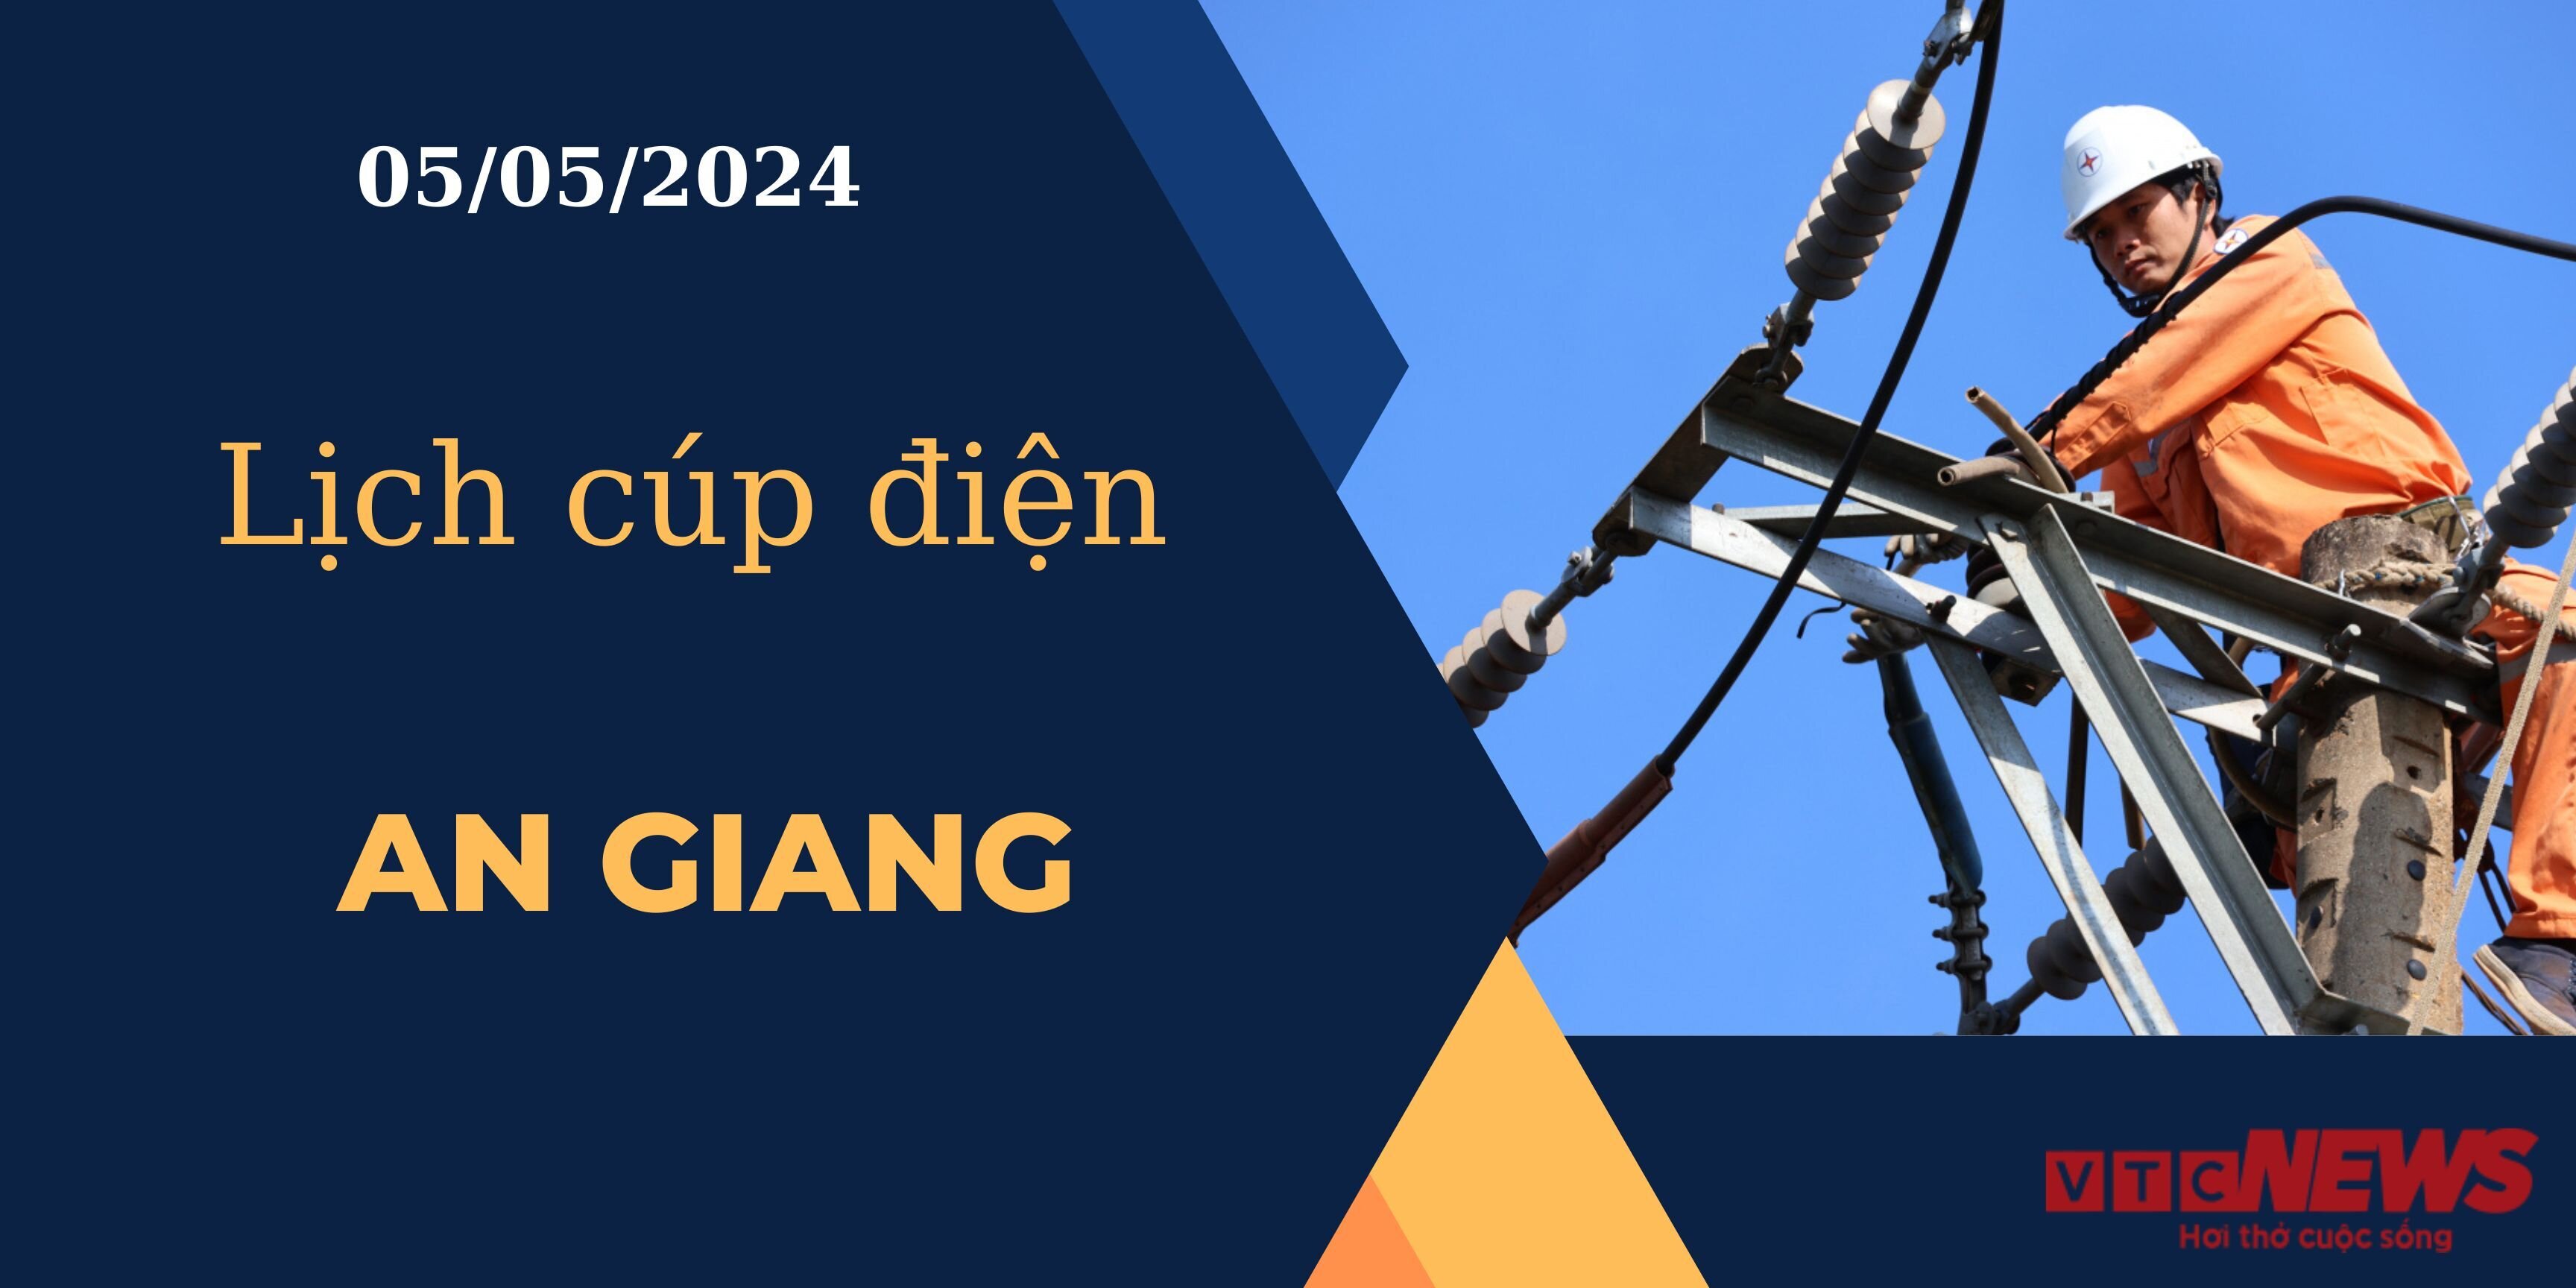 Lịch cúp điện hôm nay ngày 05/05/2024 tại An Giang